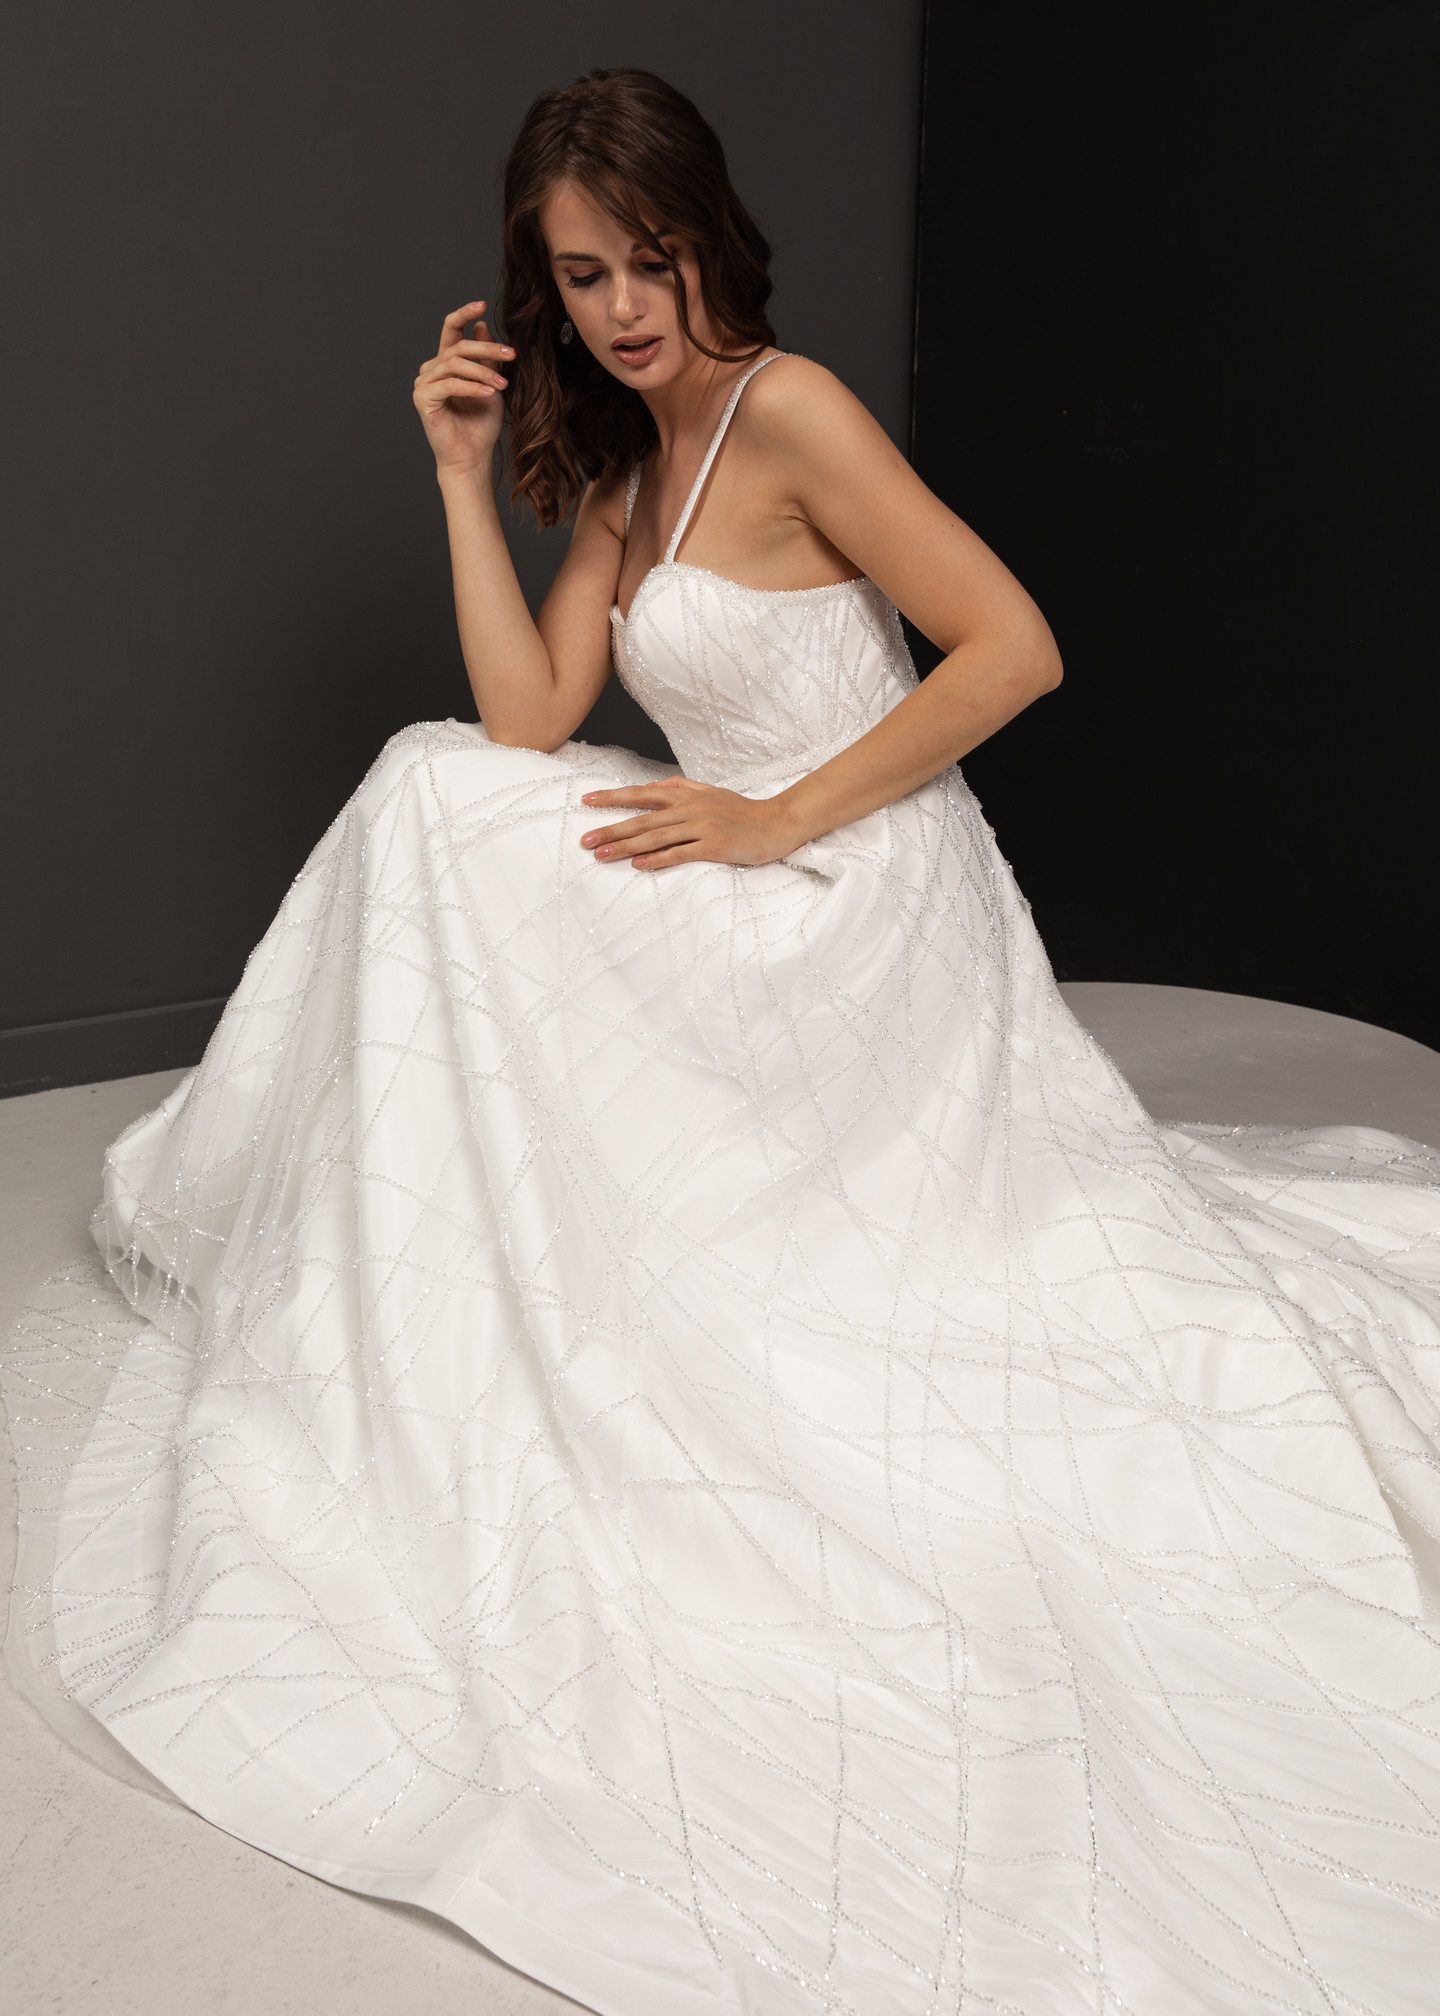 Платье Габи, 2021, одежда, платье, свадебное, молочно-белый, вышивка, А-силуэт, шлейф